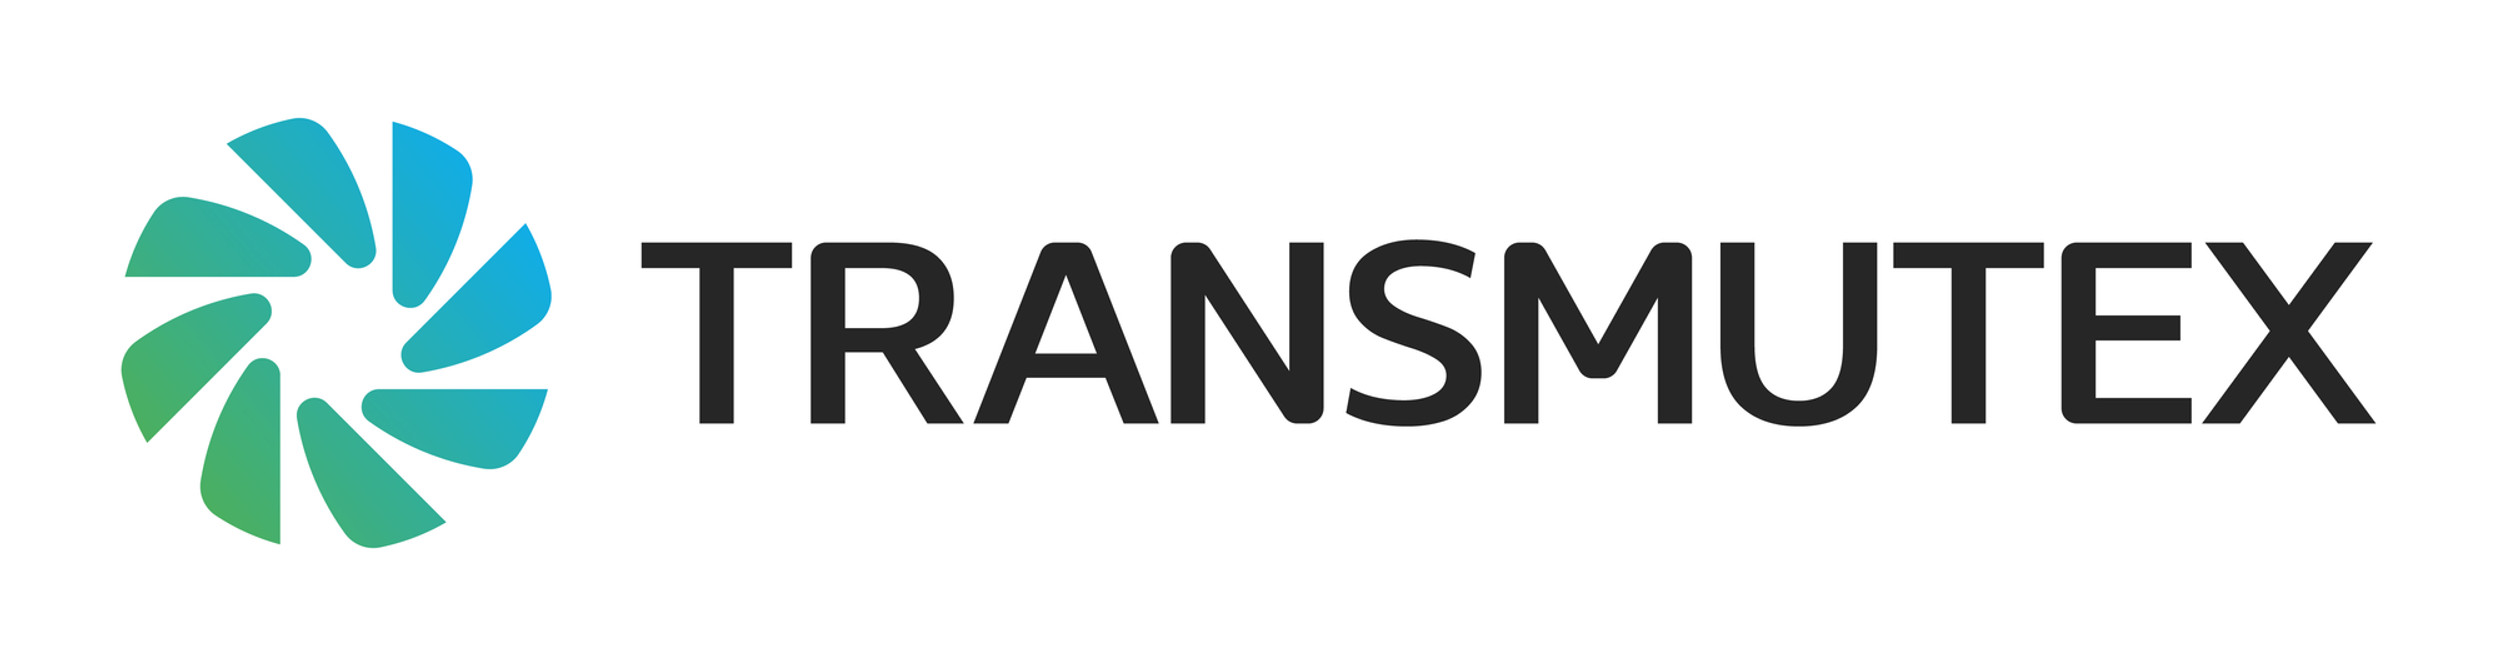 Ang logo ng Transmutex